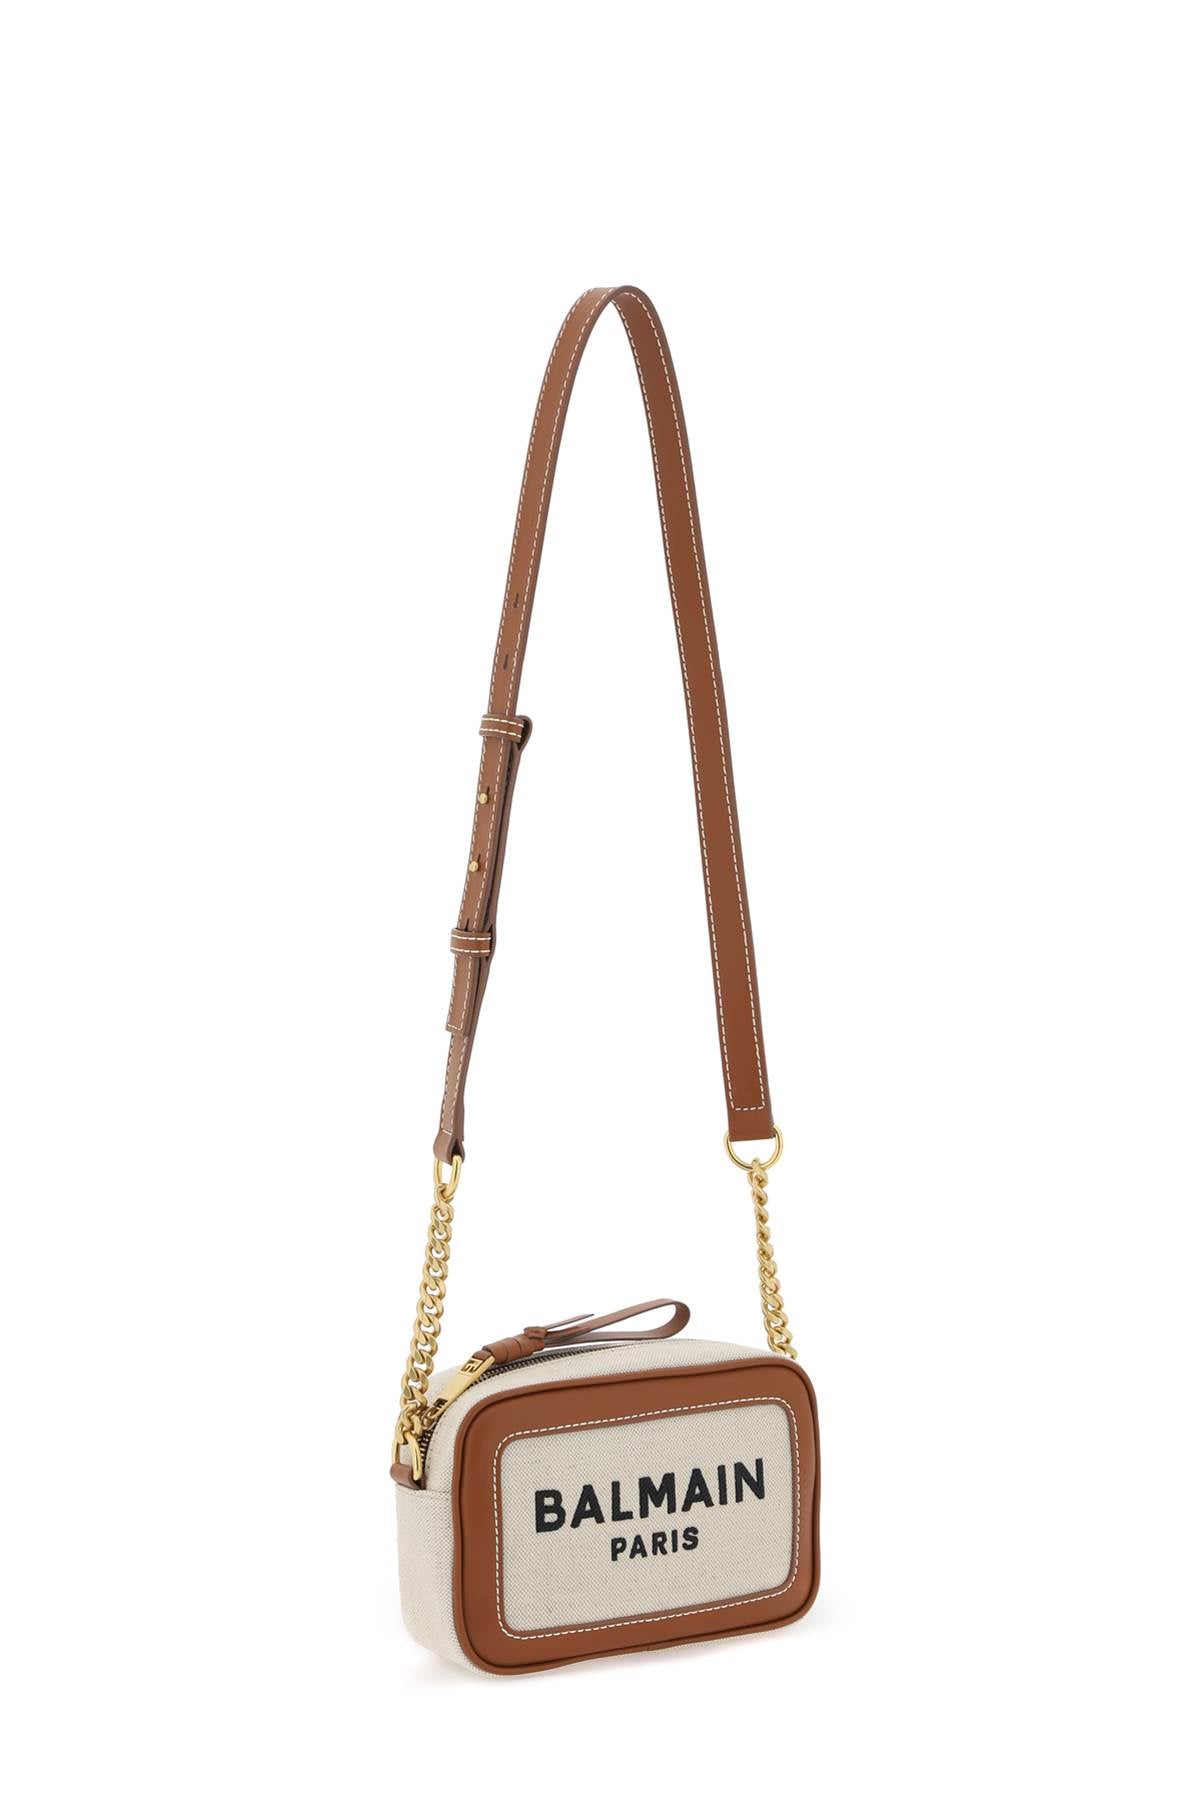  Balmain b-army crossbody bag